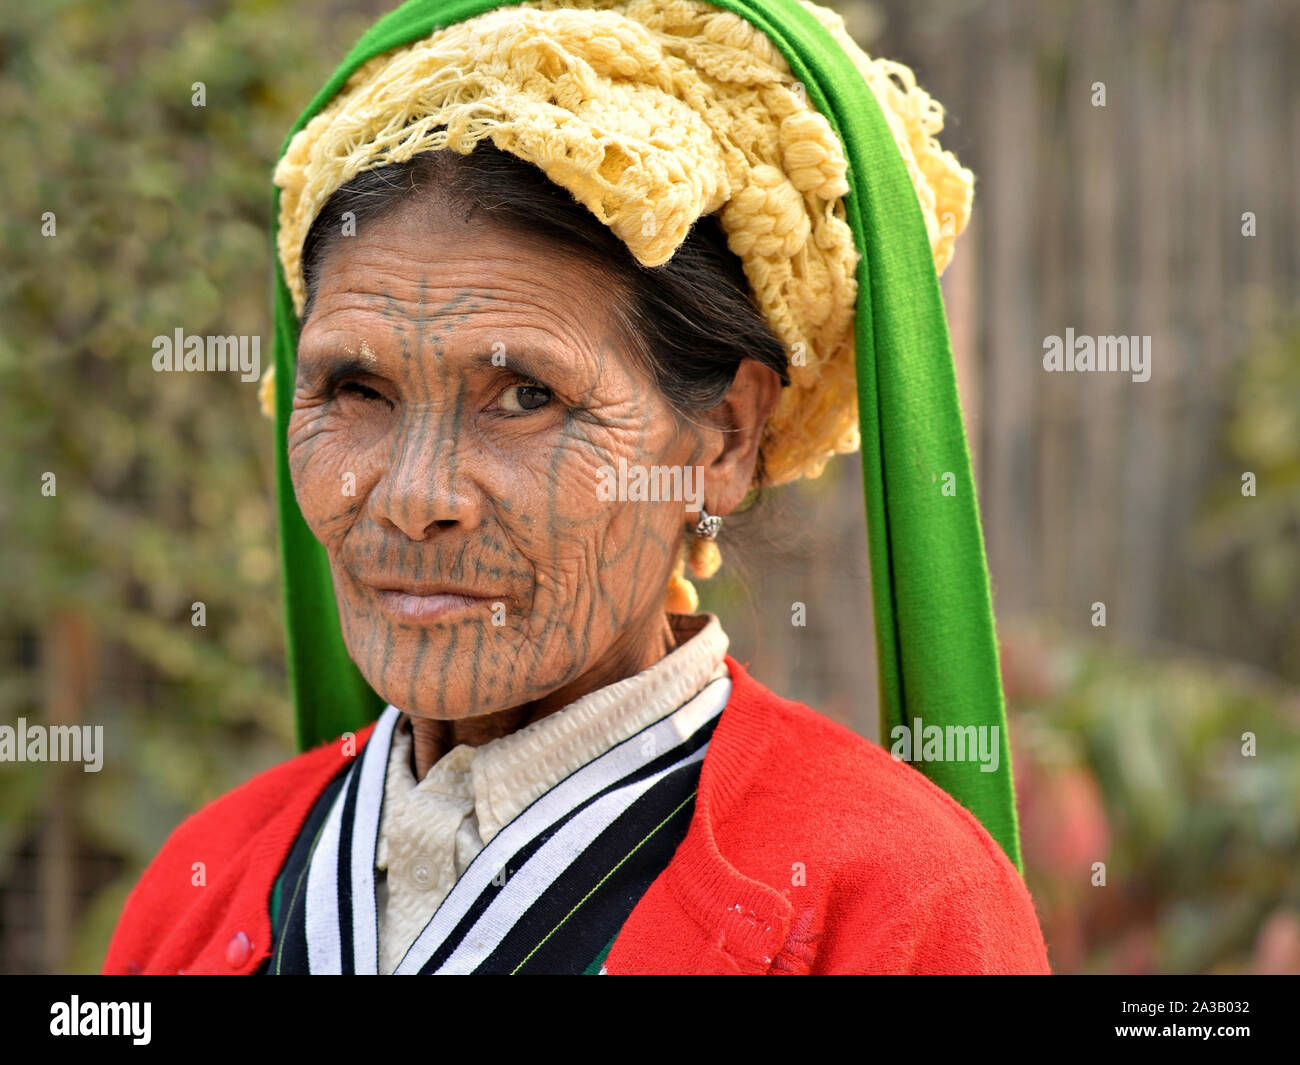 Ältere Menschen, einäugigen Kinn Muun tribal Frau ('Spider Frau') mit klassischen Gesichtsbehandlung Tattoo und lebte - Gesicht posiert für die Kamera. Stockfoto